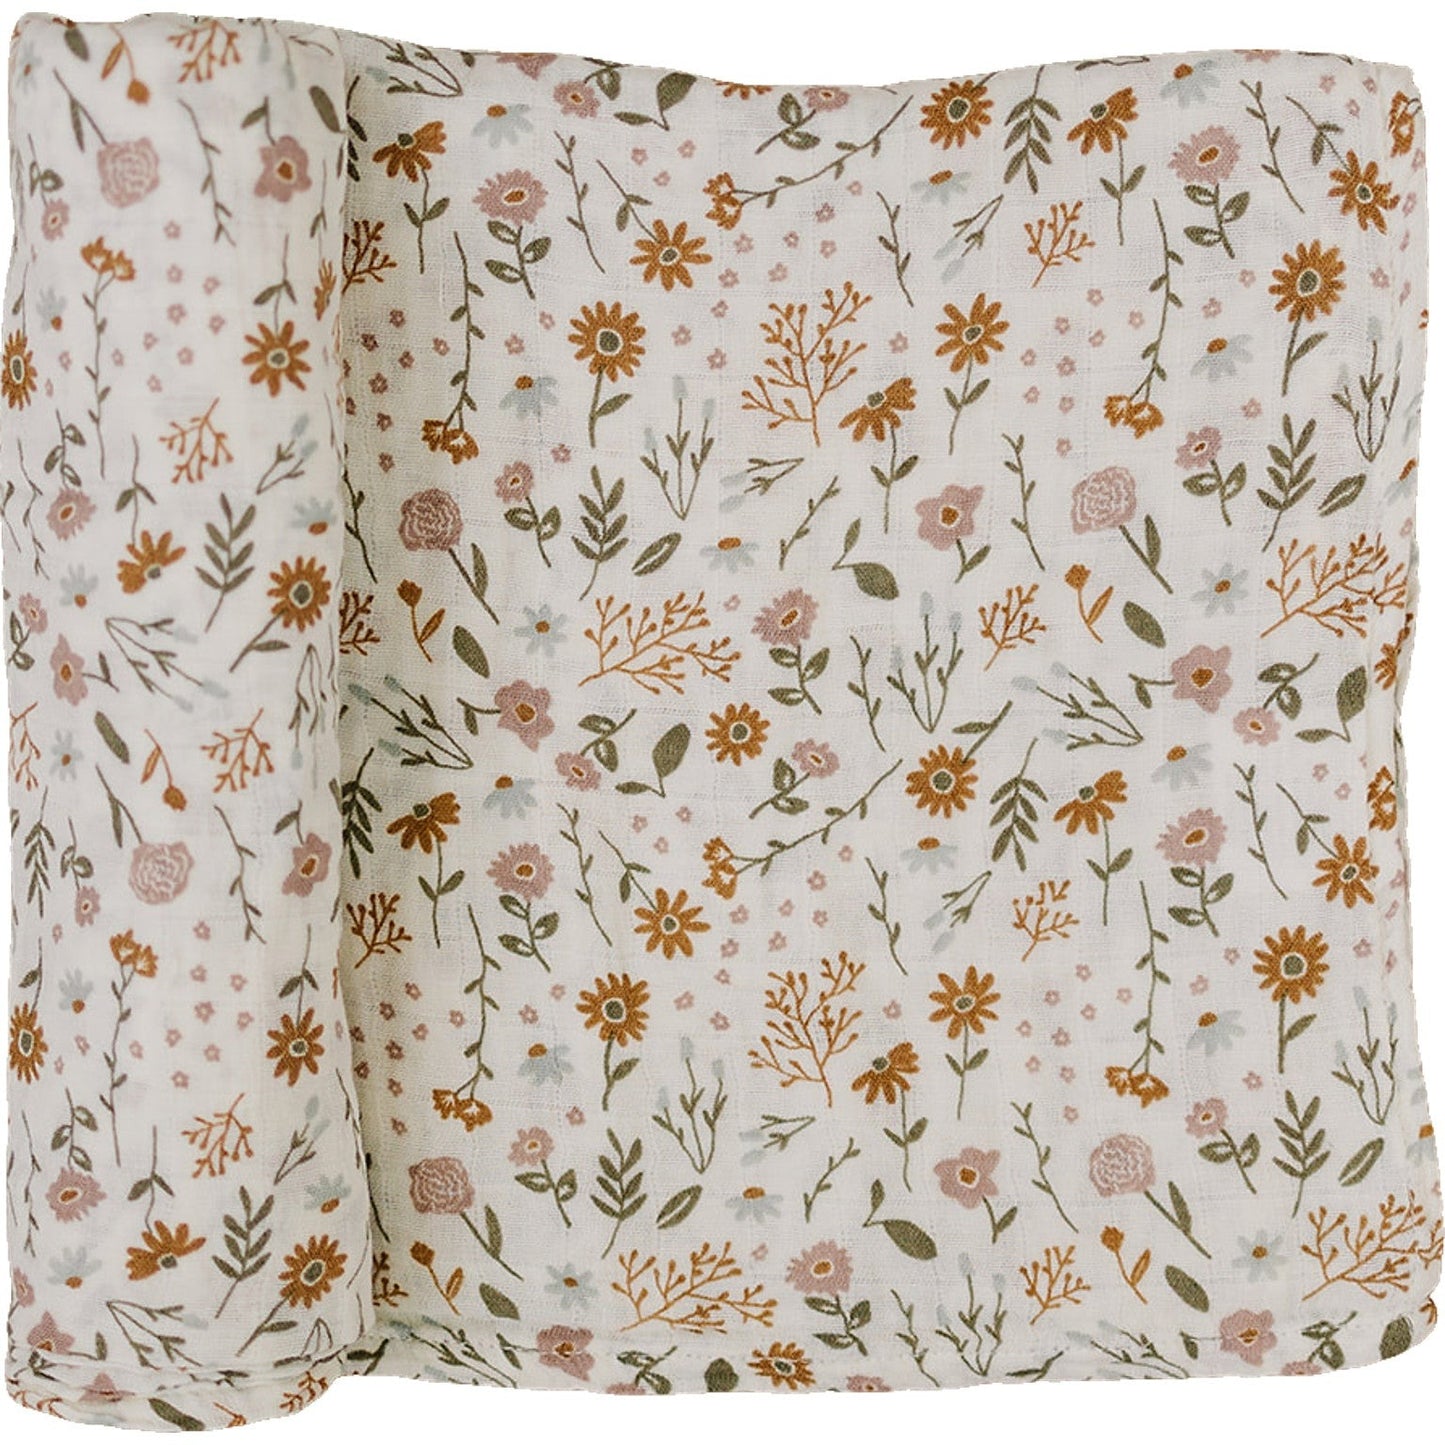 Mebie Baby Meadow Floral Muslin Swaddle Blanket